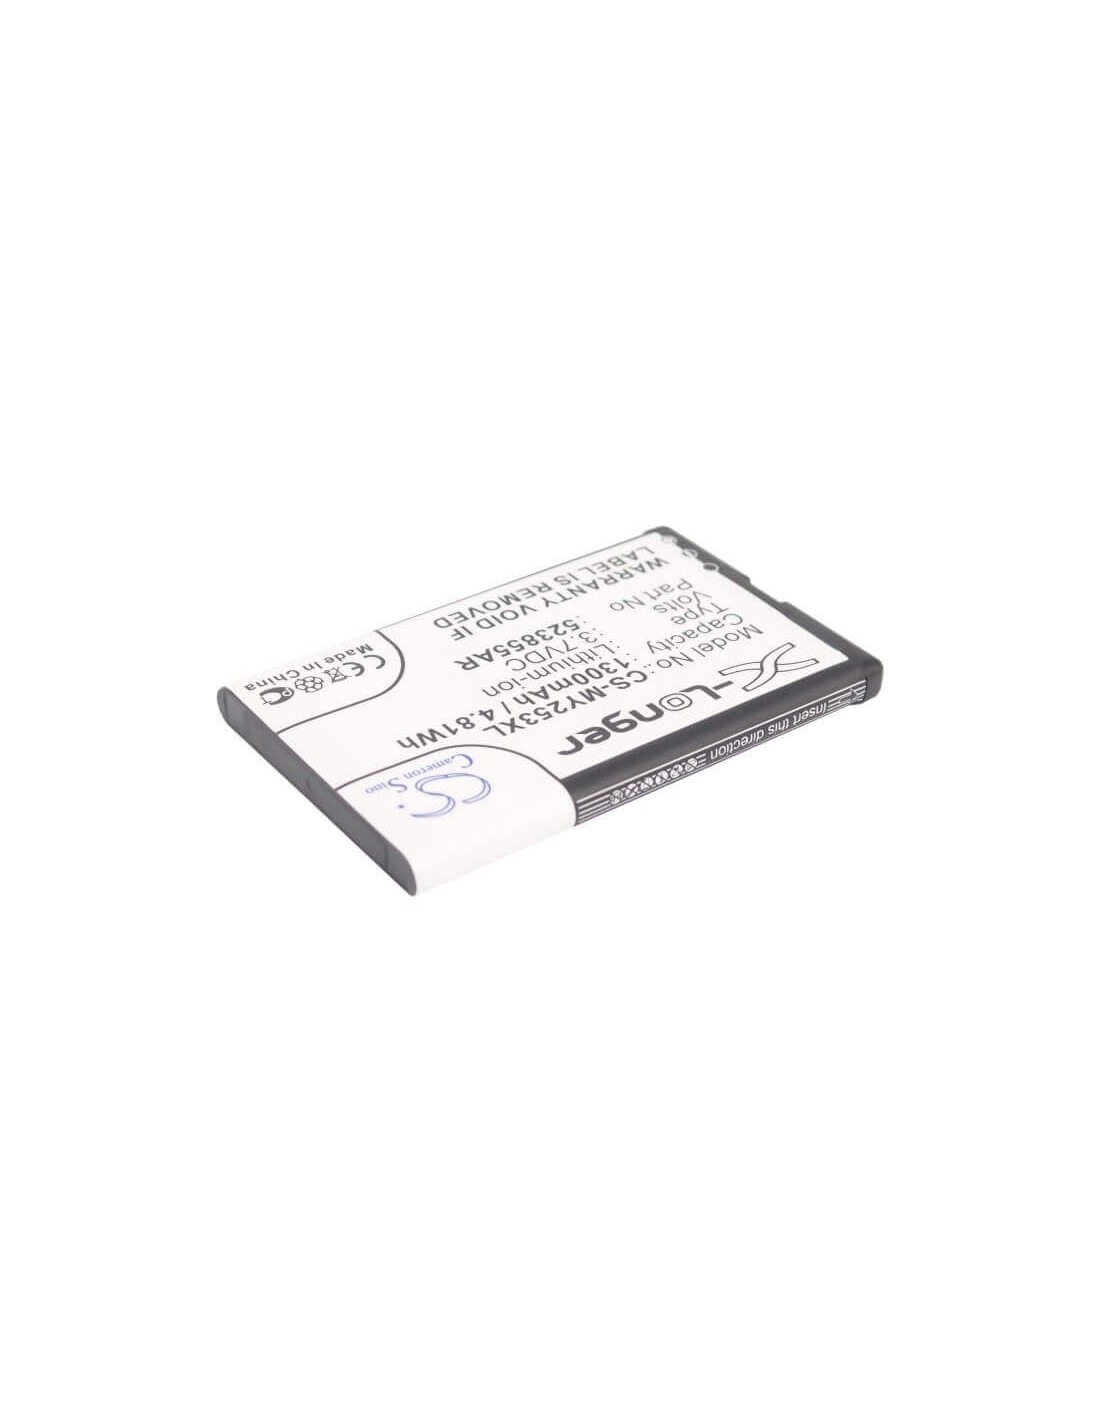 Battery for Sagem Alium, 253491226 3.7V, 1300mAh - 4.81Wh